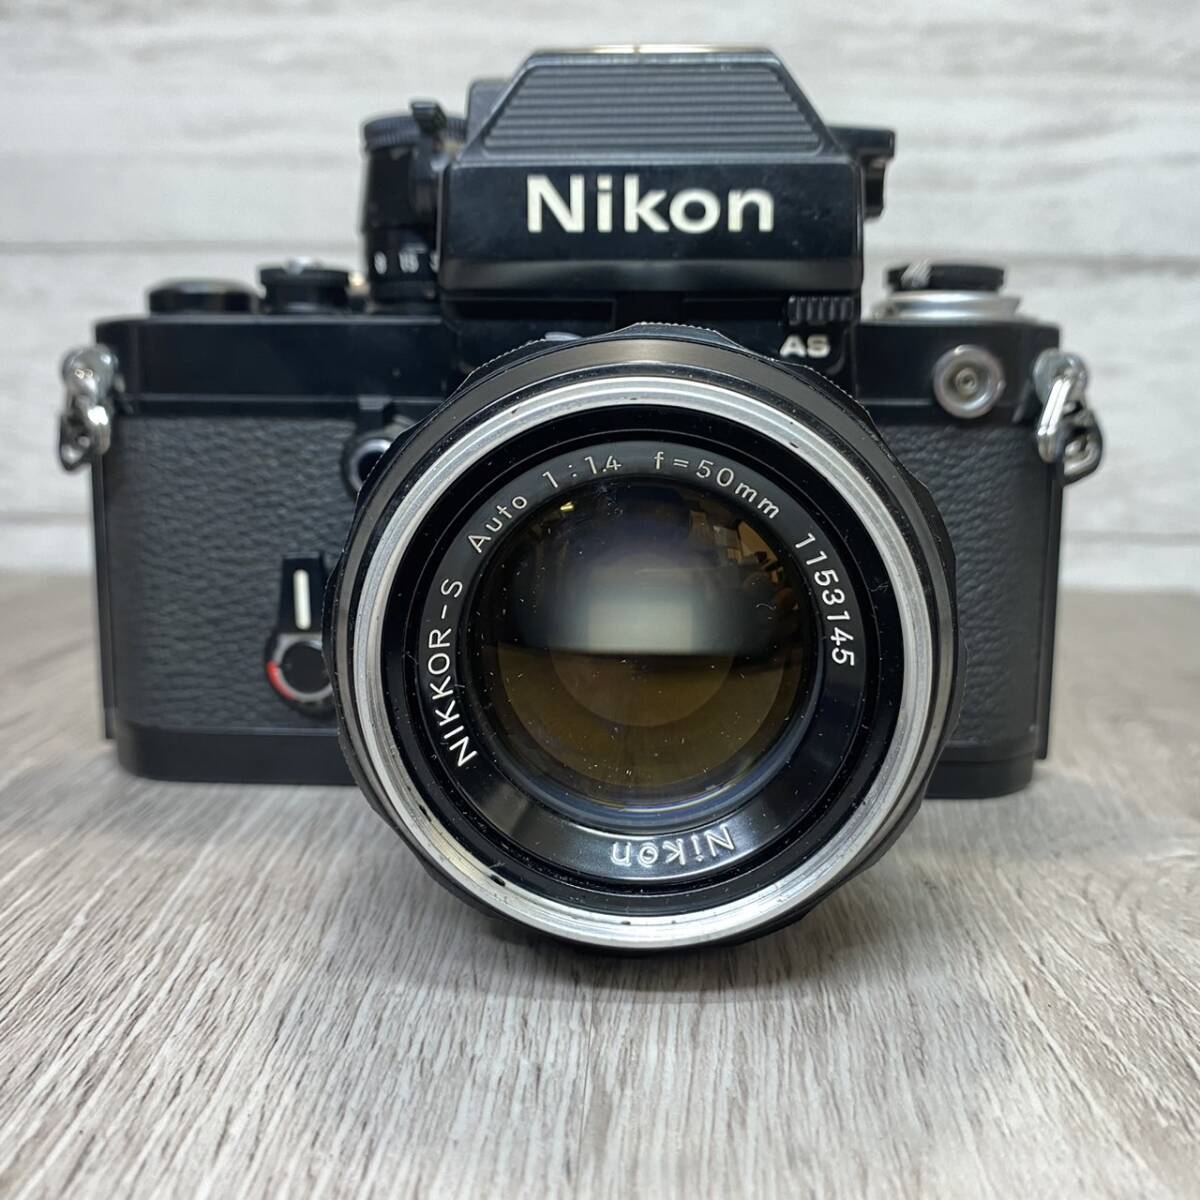 【YH-8430】中古現状品 NiKon F2 ボディ + レンズ 1:1.4 f=50mm ニコン 一眼レフ カメラ_画像2